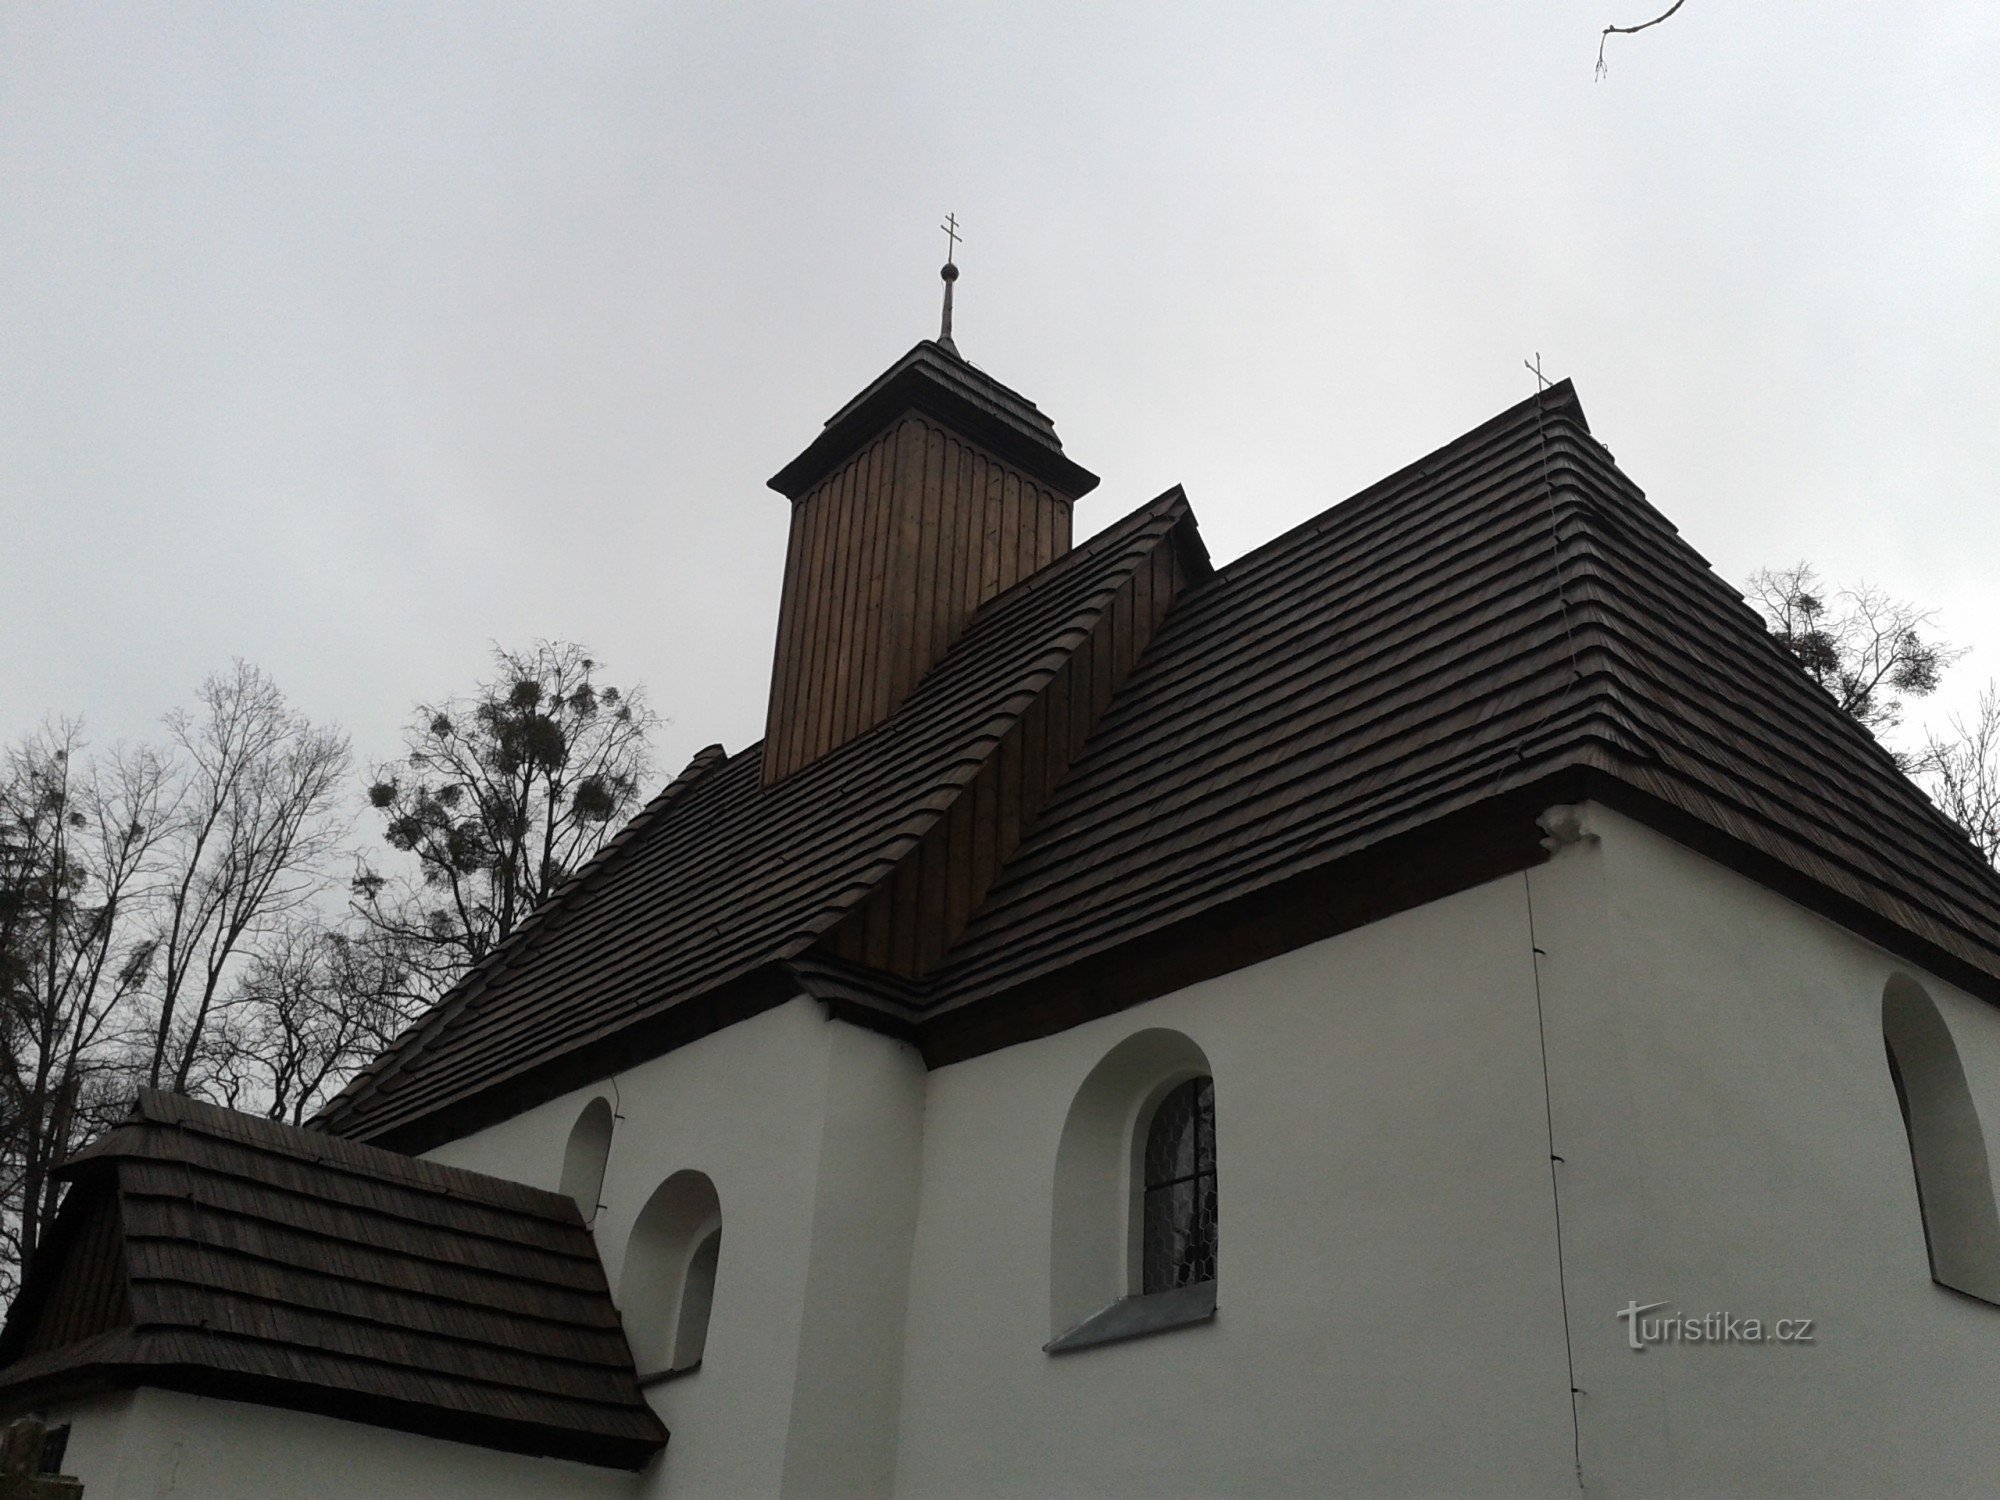 Церква св. Катержини в Штрамберку